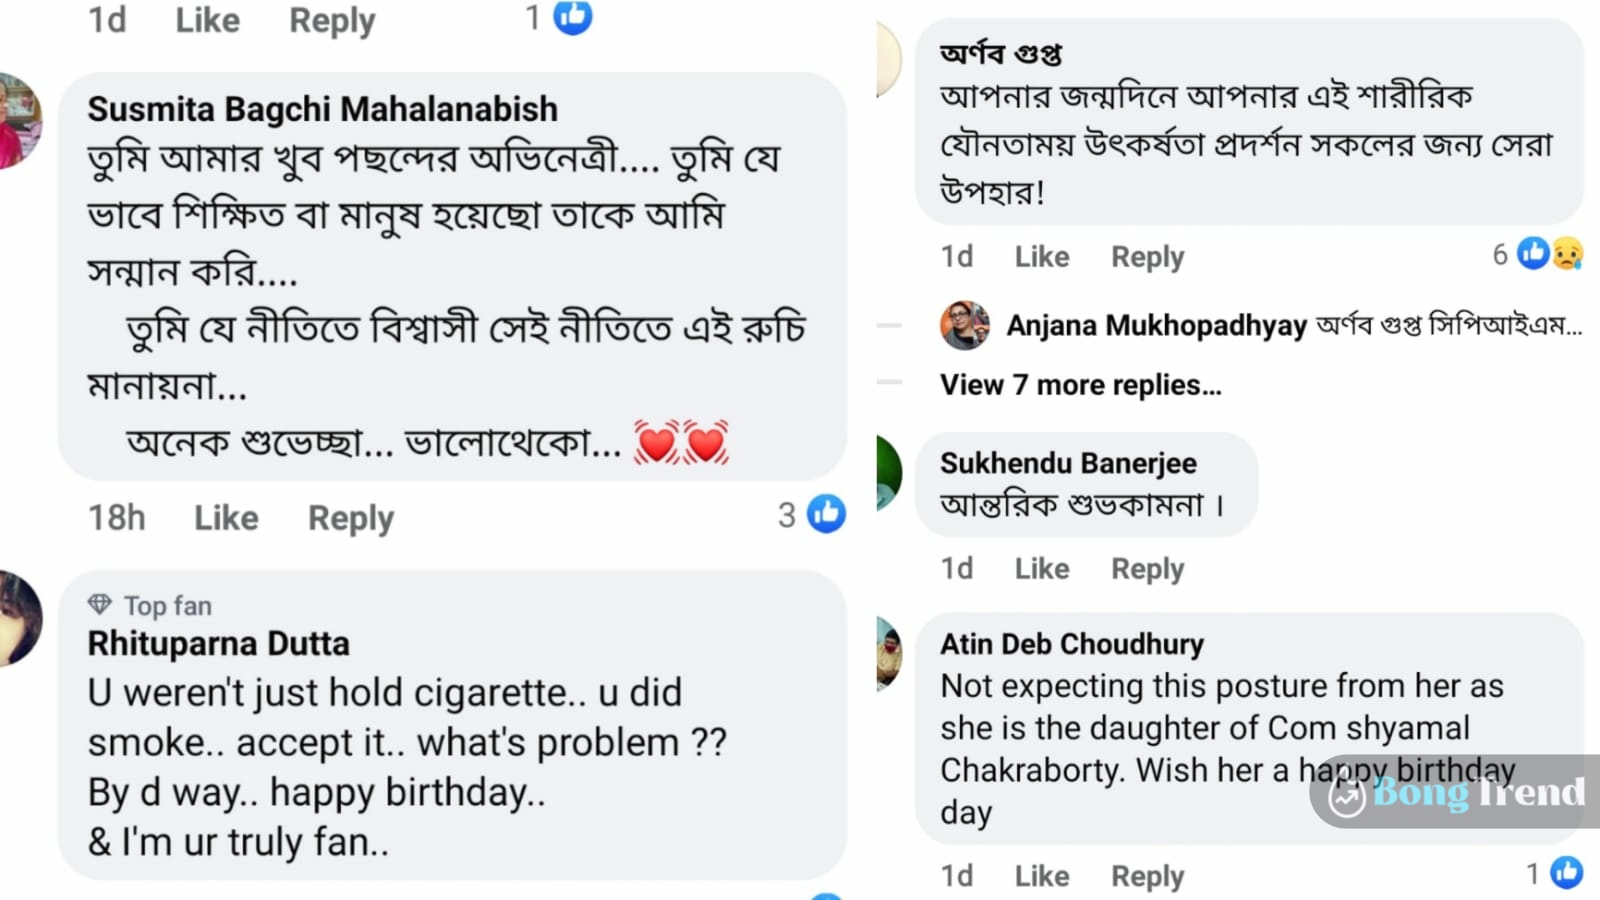 Ushasie Chakraborty Photo comments